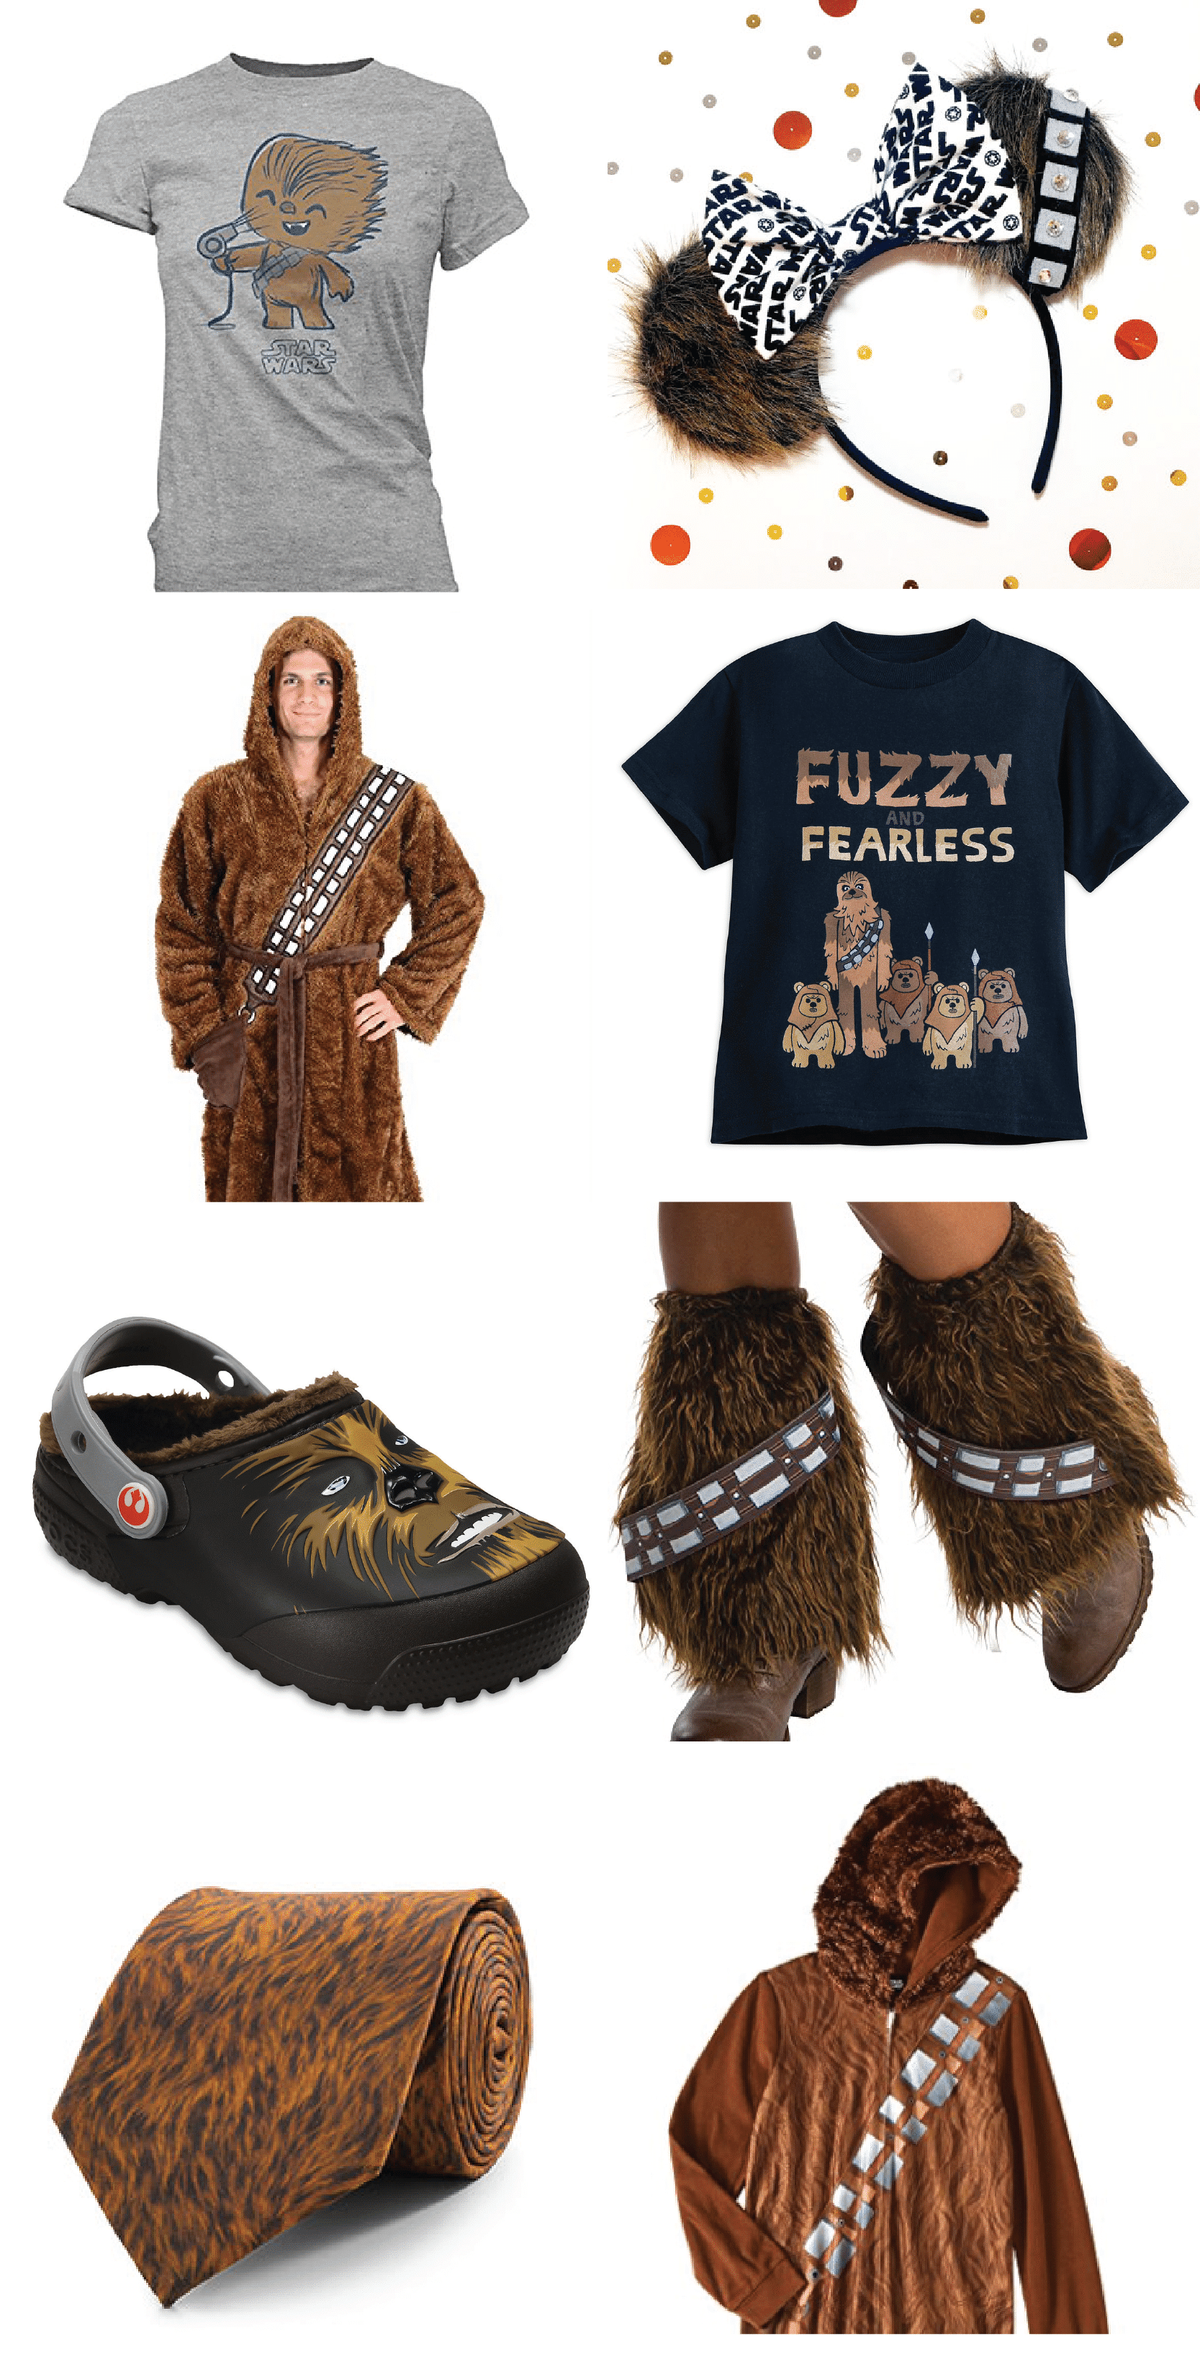 Vajadzīga Zvaigžņu karu dāvana, ko ņemt līdzi uz ballīti? Šie Chewbacca iedvesmotie produkti ir dažas no labākajām dzimšanas dienas dāvanām, Zvaigžņu karu apģērbiem vai tiešām tikai produkti cilvēkiem, kuri mīlēja The Last Jedi